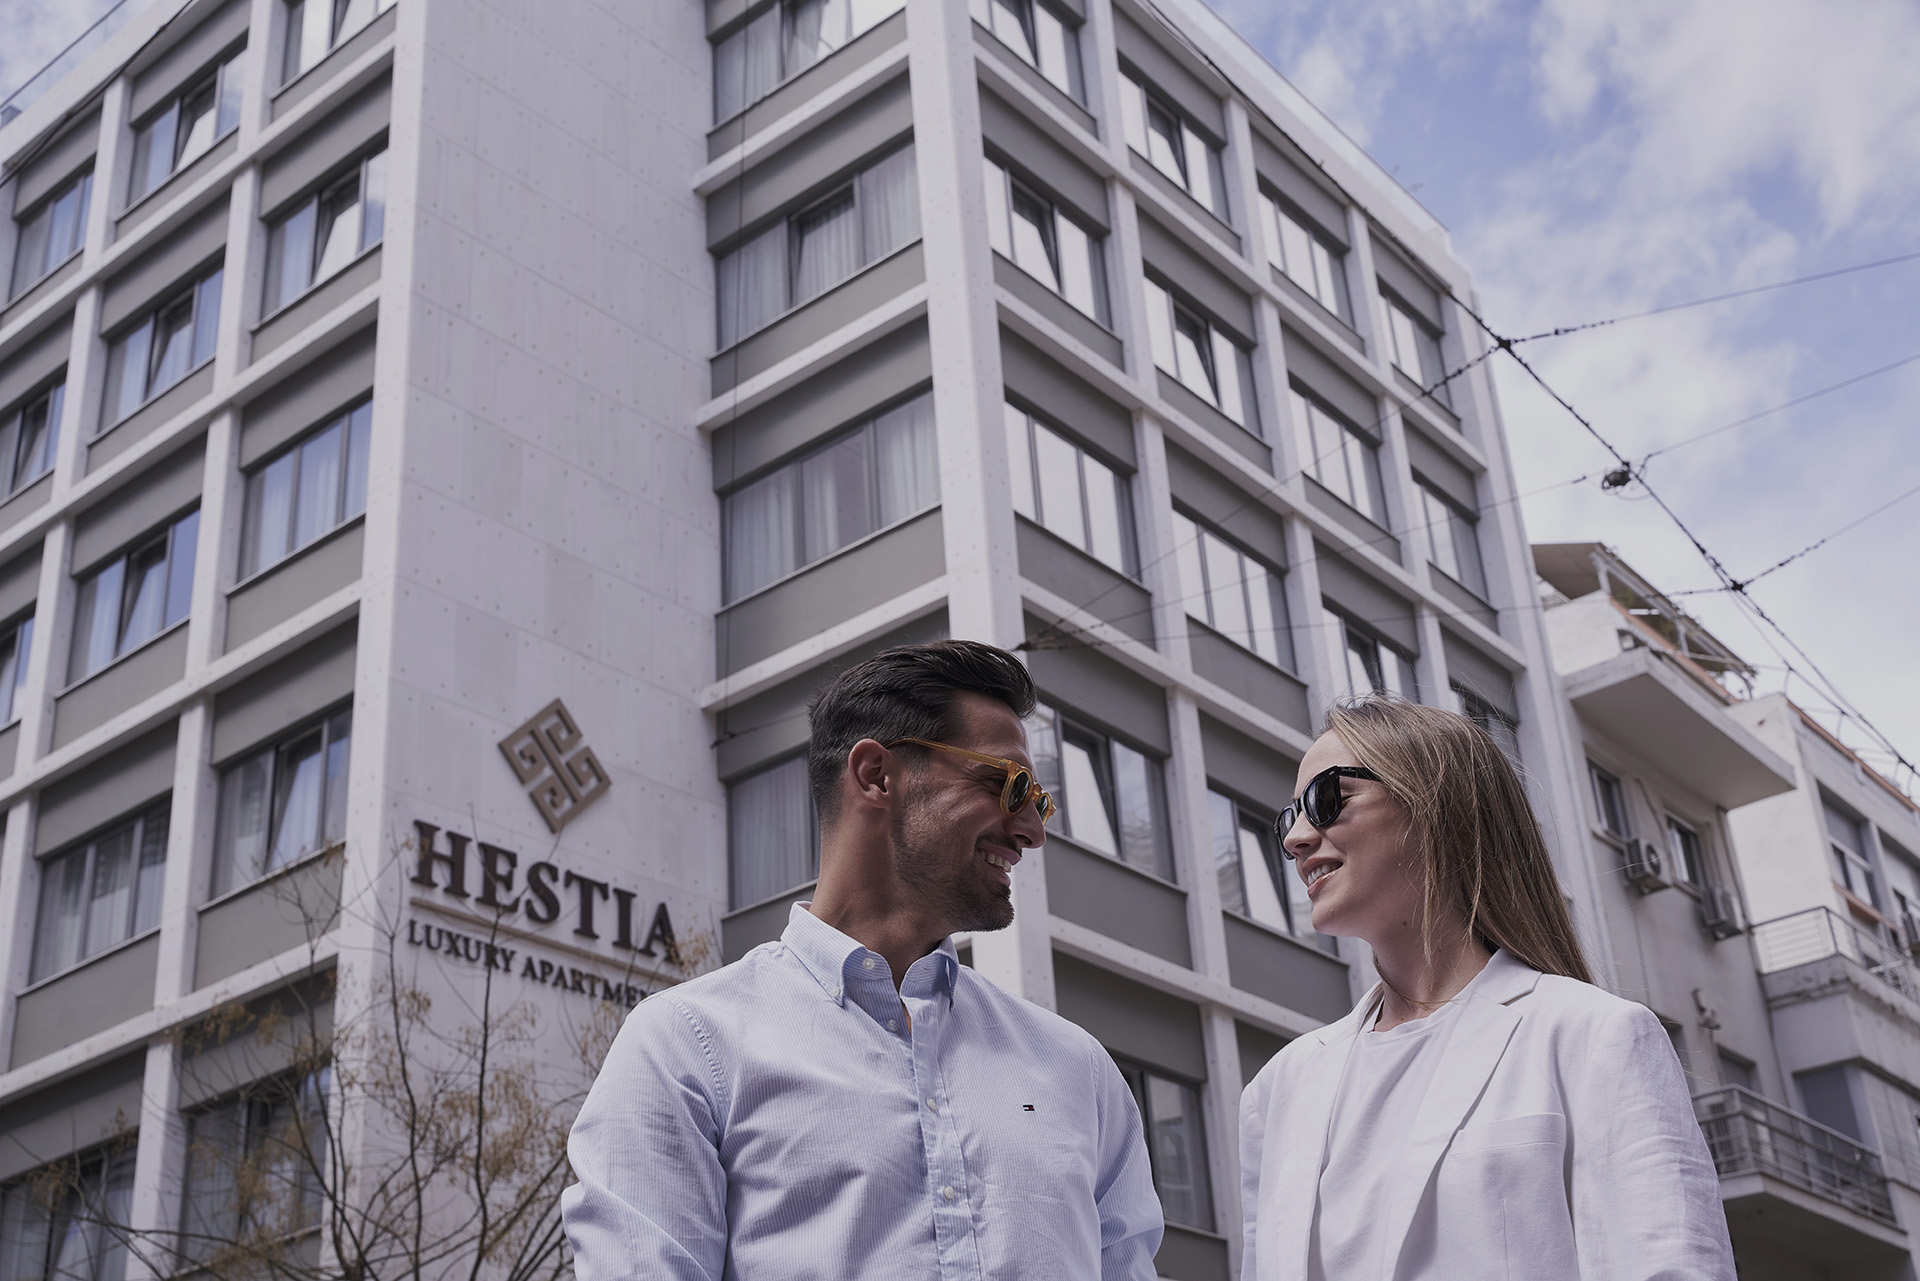 hestia Luxury Apartments in Athens | Hestia Luxury Apartments | Athens, Greece